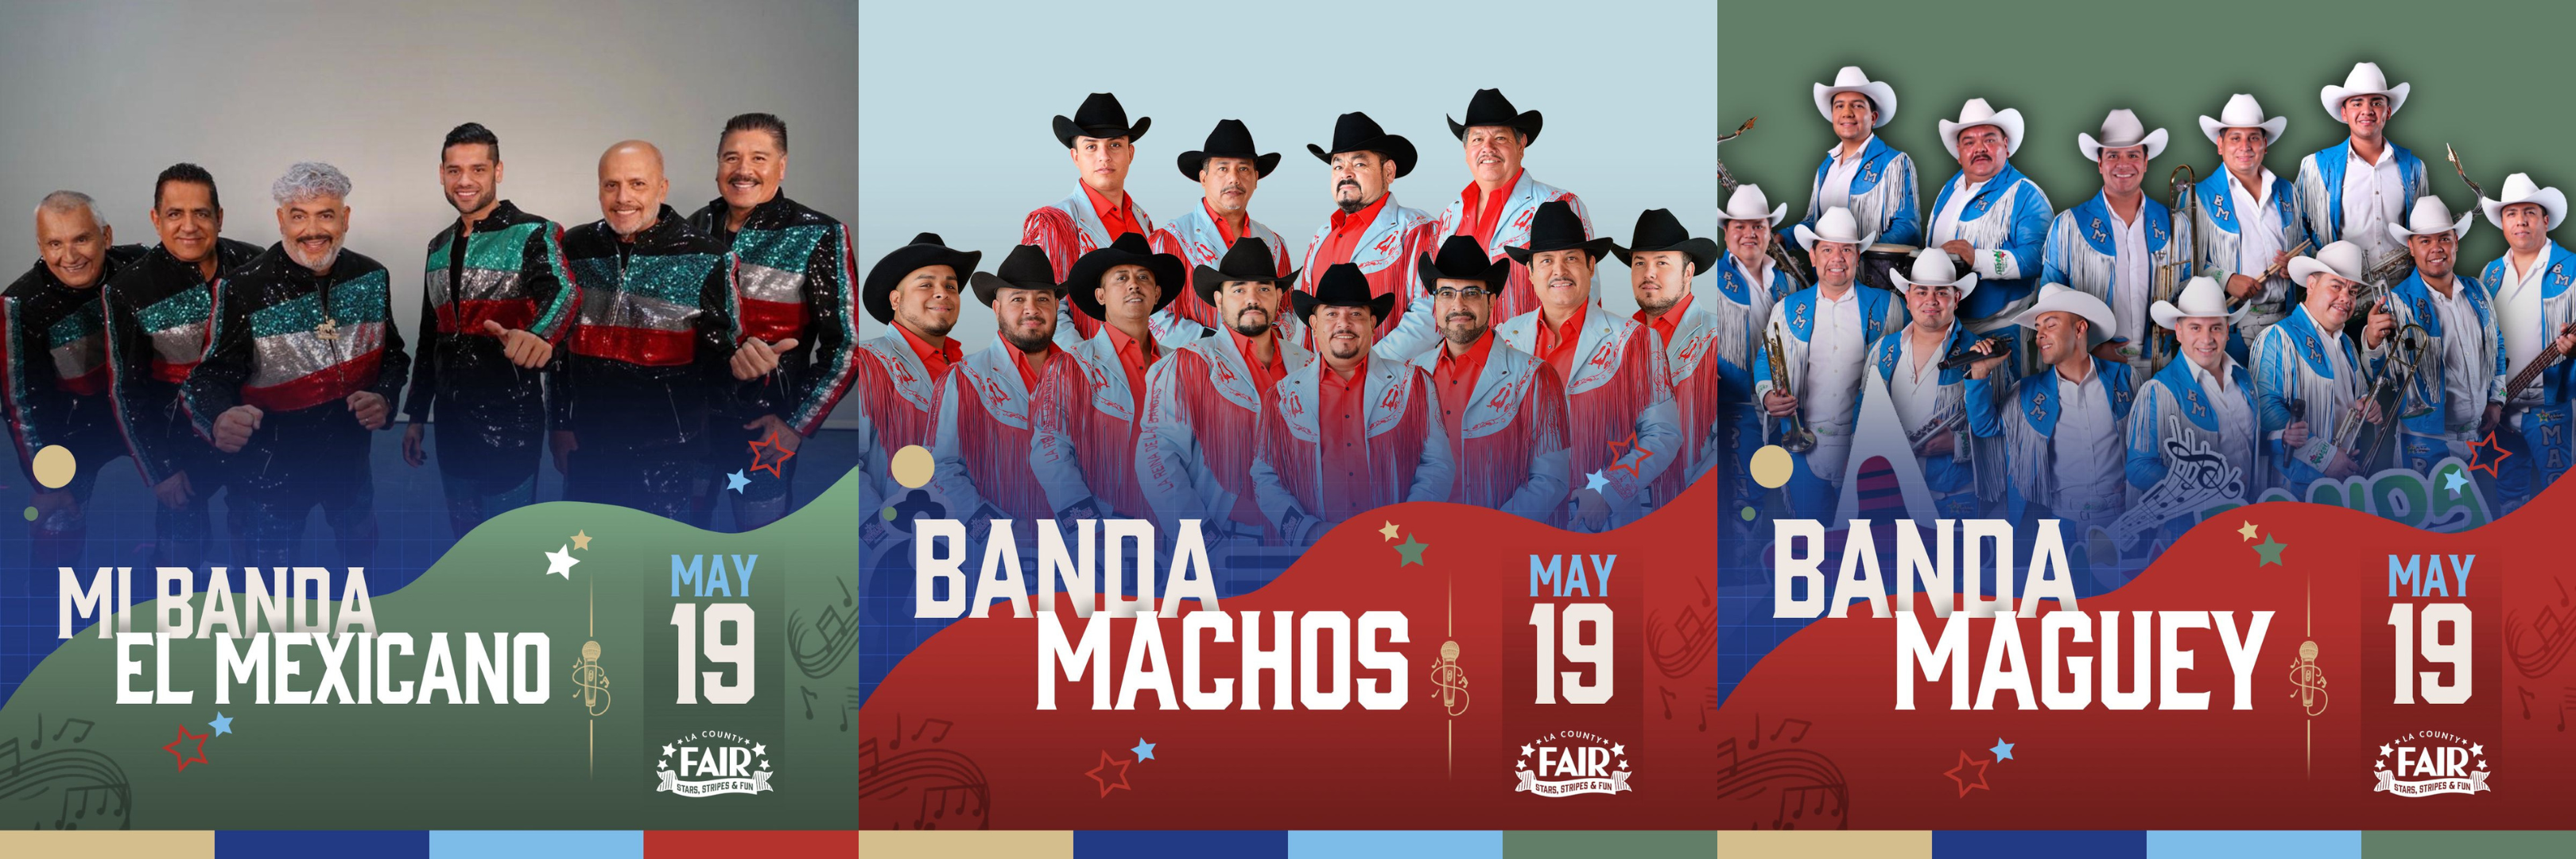 Know Before You Go: Mi Banda El Mexicano, Banda Machos, & Banda Maguey